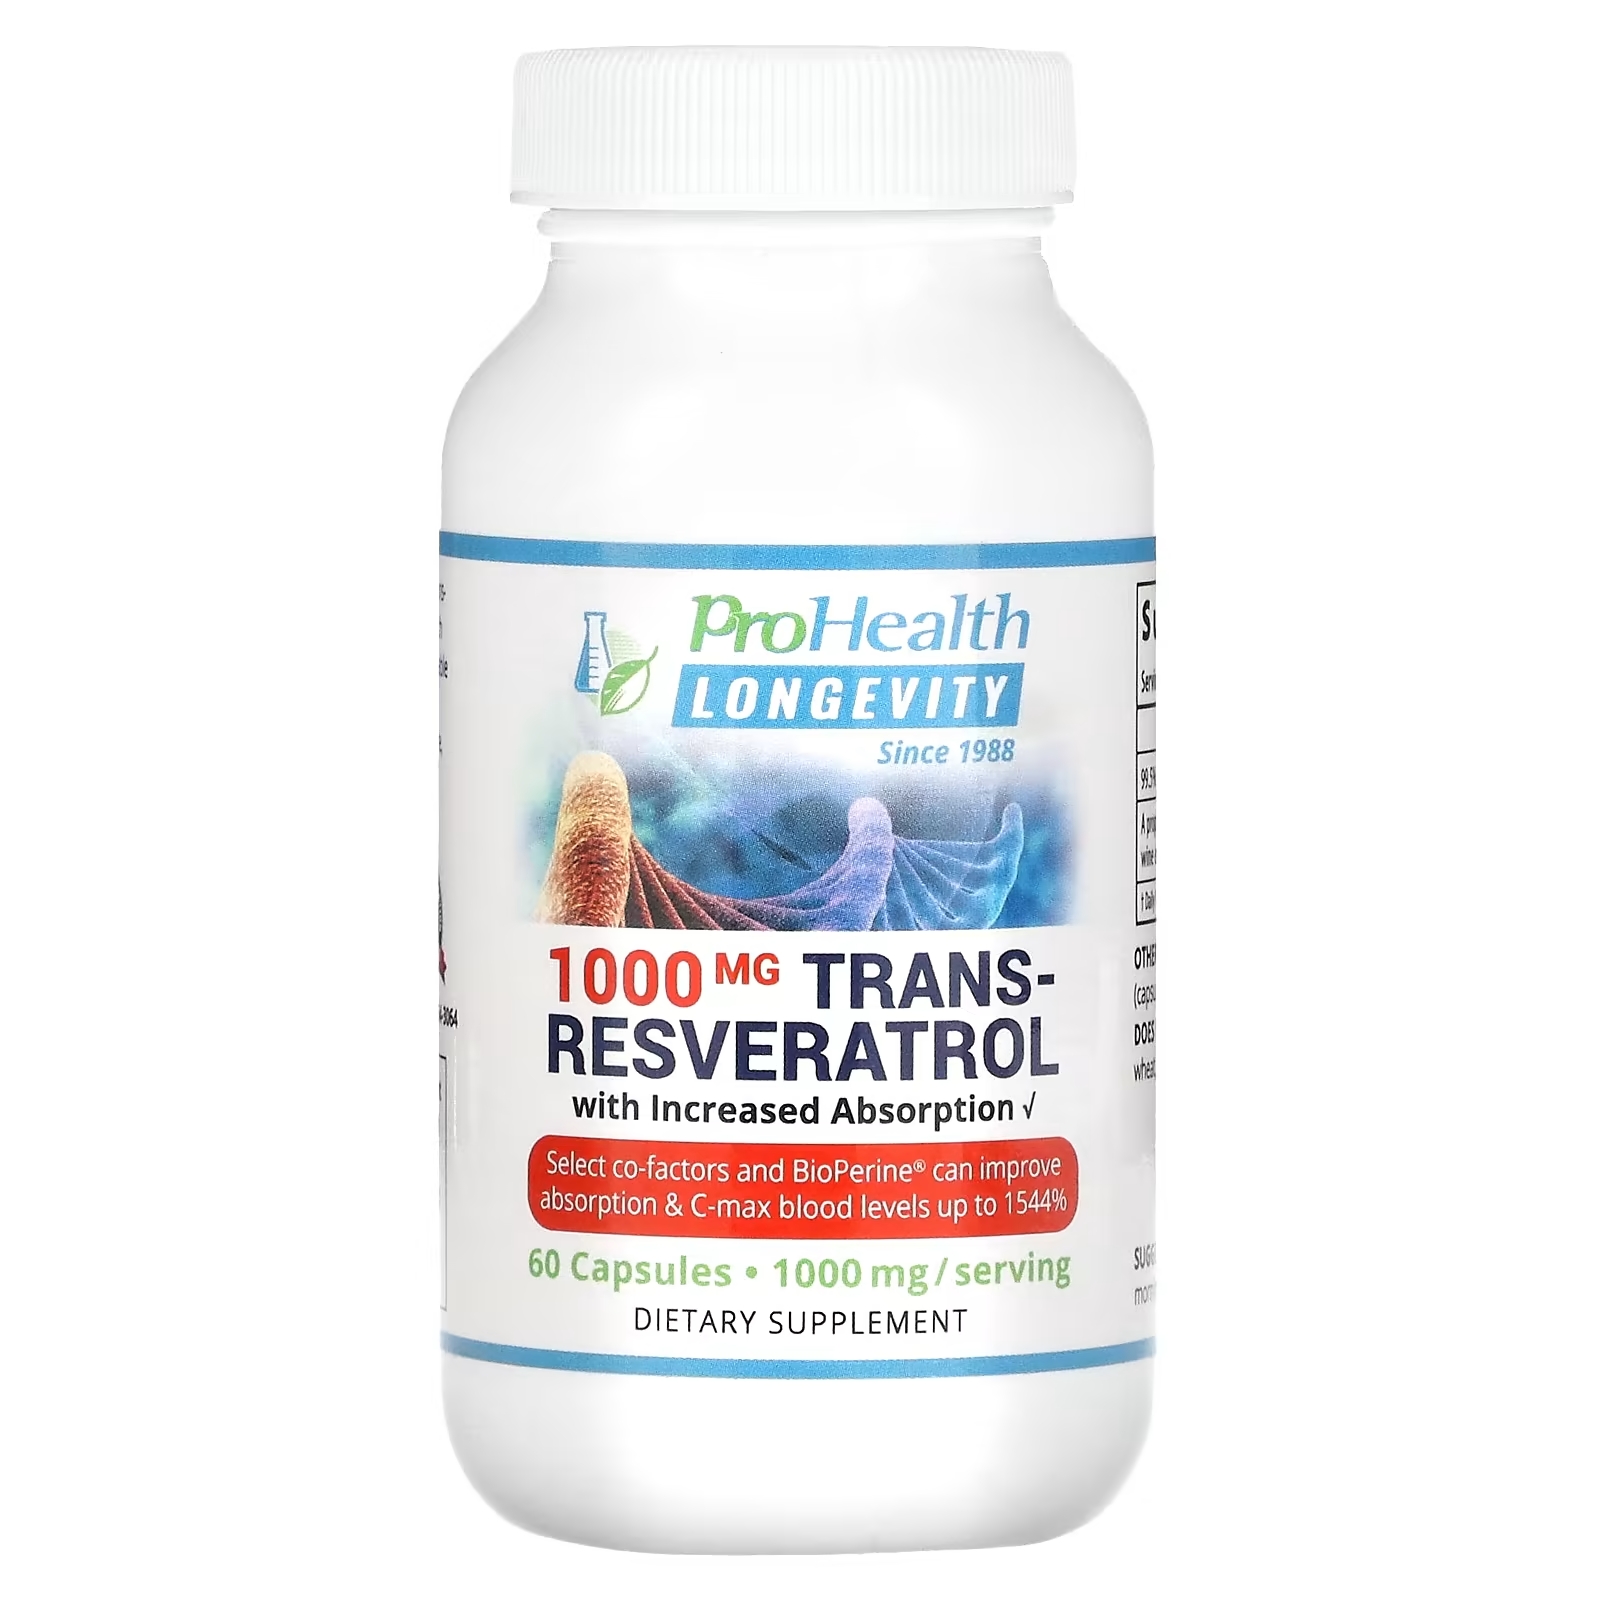 ProHealth Longevity Транс-ресвератрол для повышения усвояемости 500 мг, 60 капсул prohealth longevity транс ресвератрол для повышения усвояемости 500 мг 60 капсул